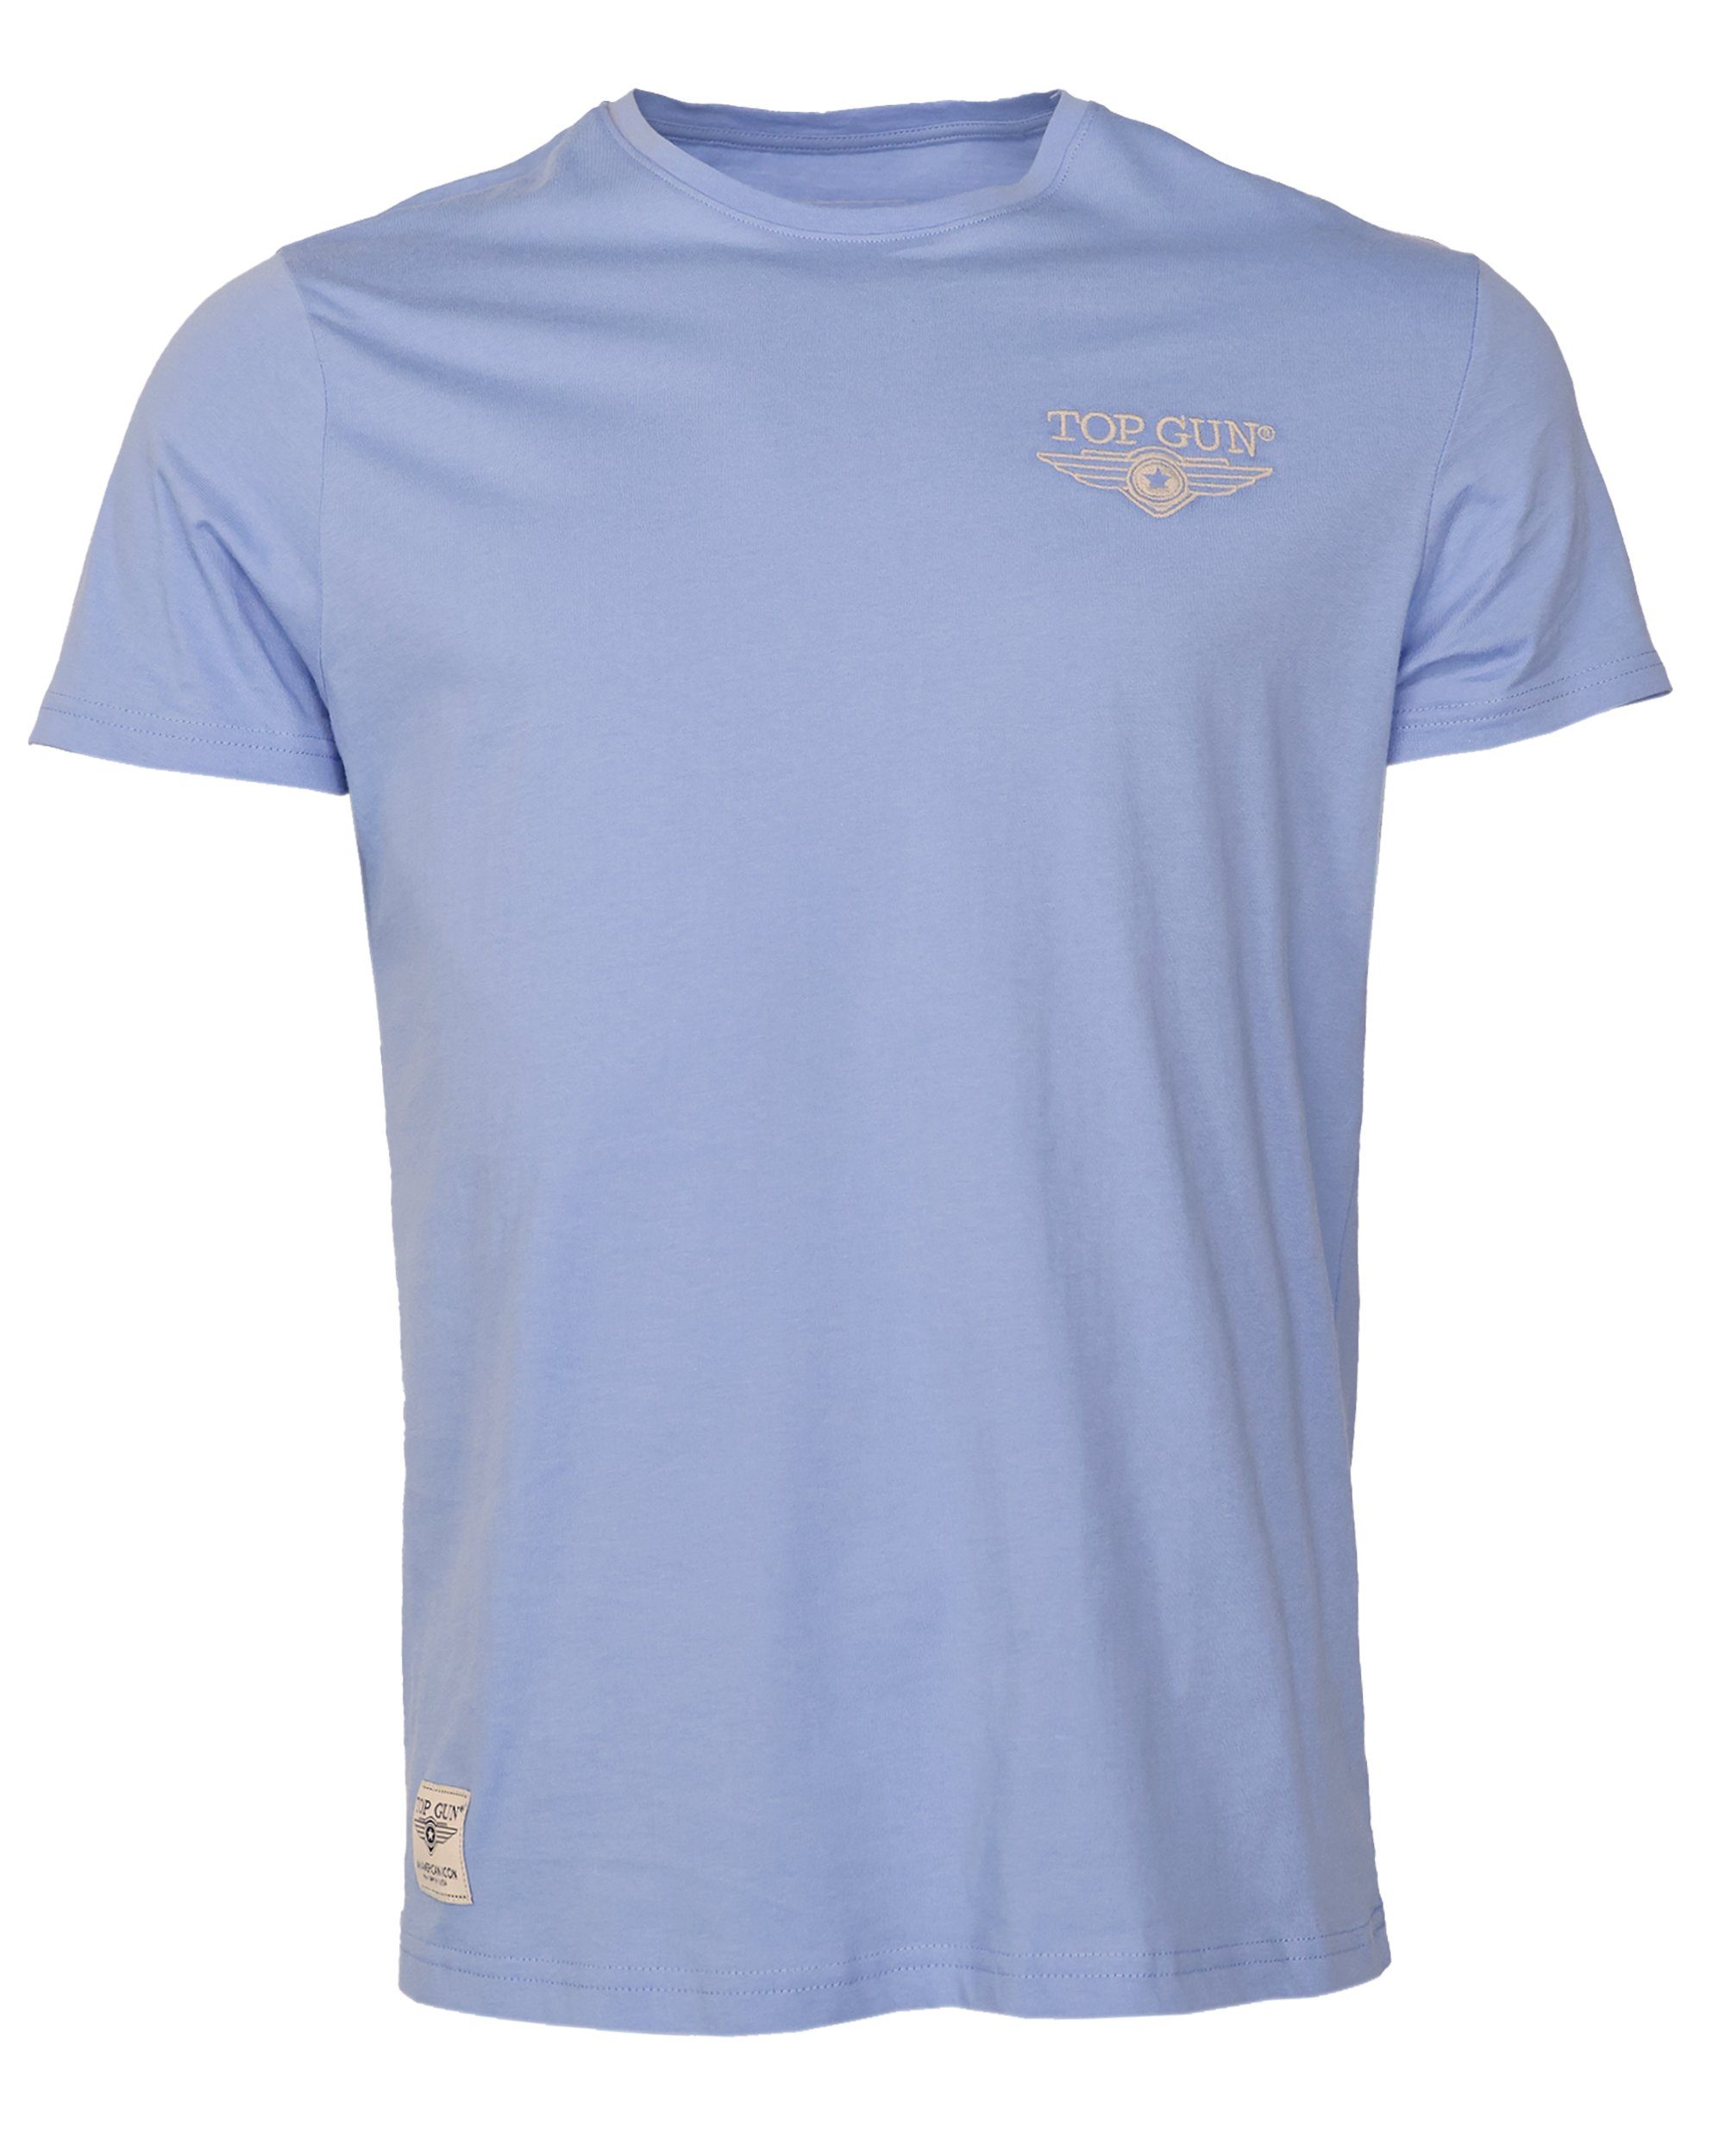 TOP GUN T-Shirt TG20213036 light blue | T-Shirts